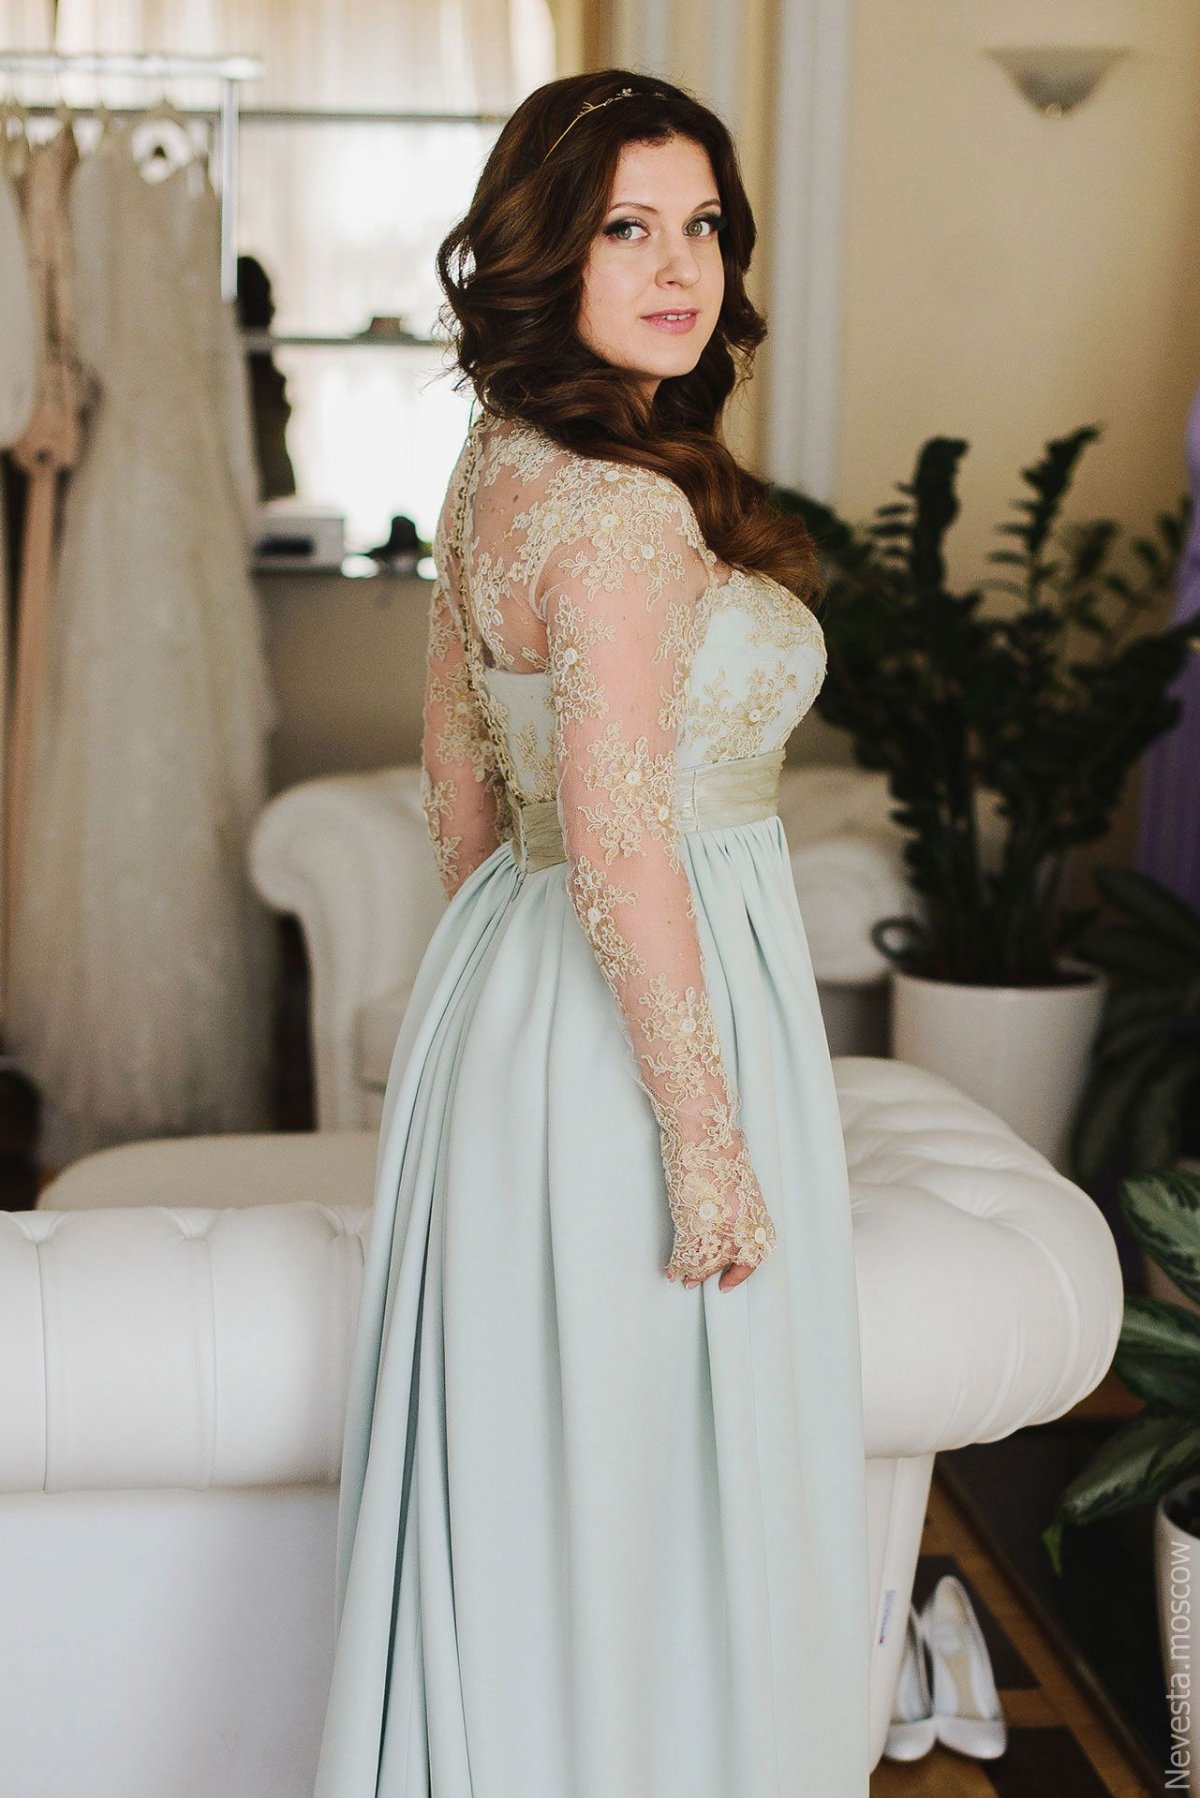 Анастасия Денисова примеряет свадебное платье фото 3